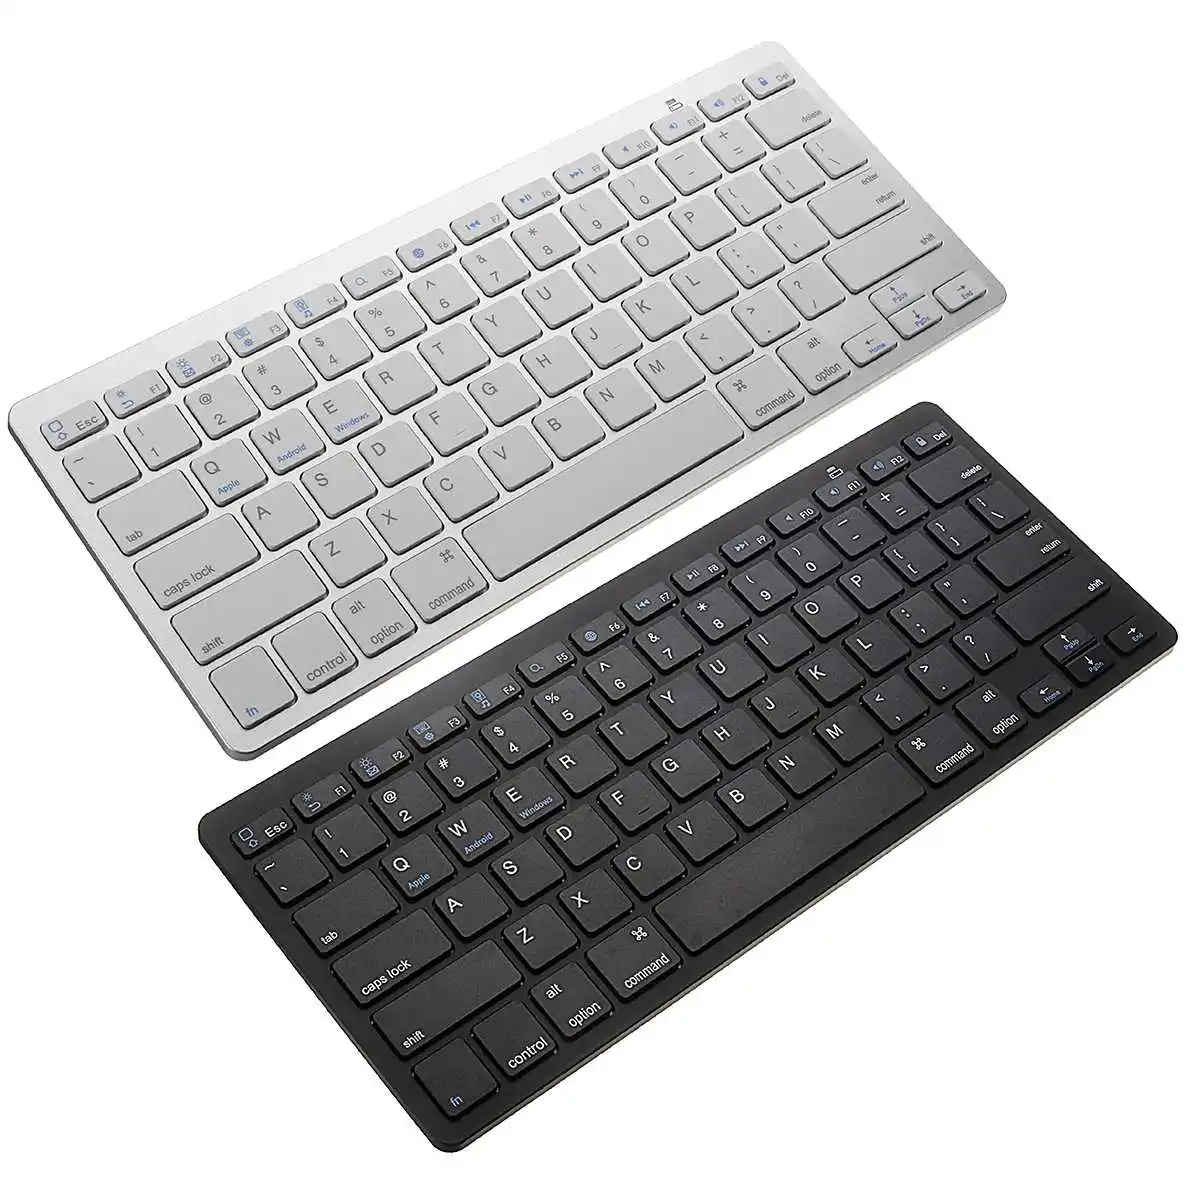 Ультратонкая беспроводная клавиатура LEORY bluetooth 3 0 для iPad iPhone MacBook Samsung телефона ПК